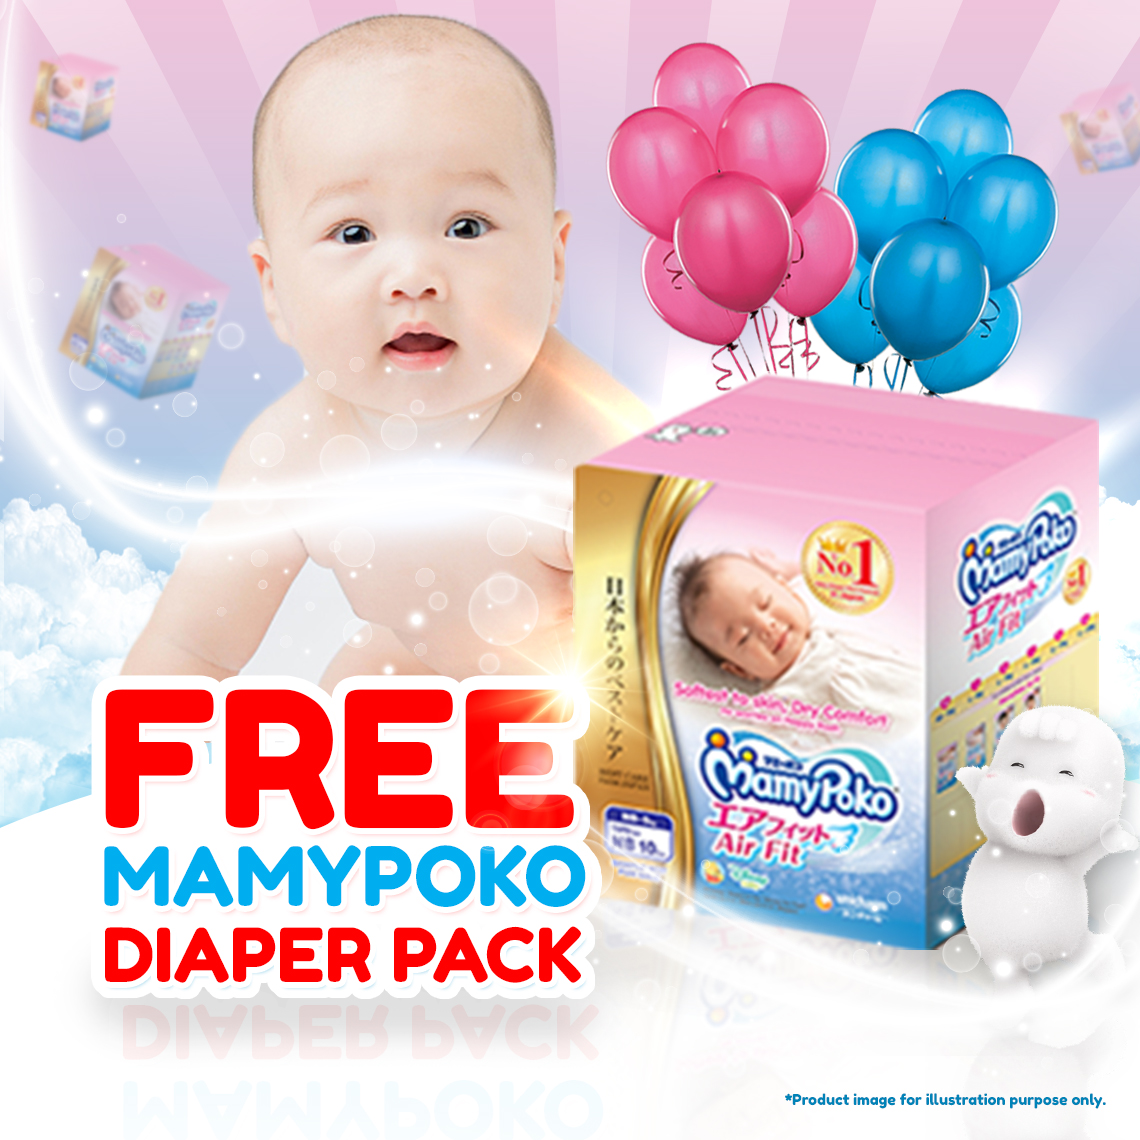 Free Mamypoko Air Fit Diaper Sample 